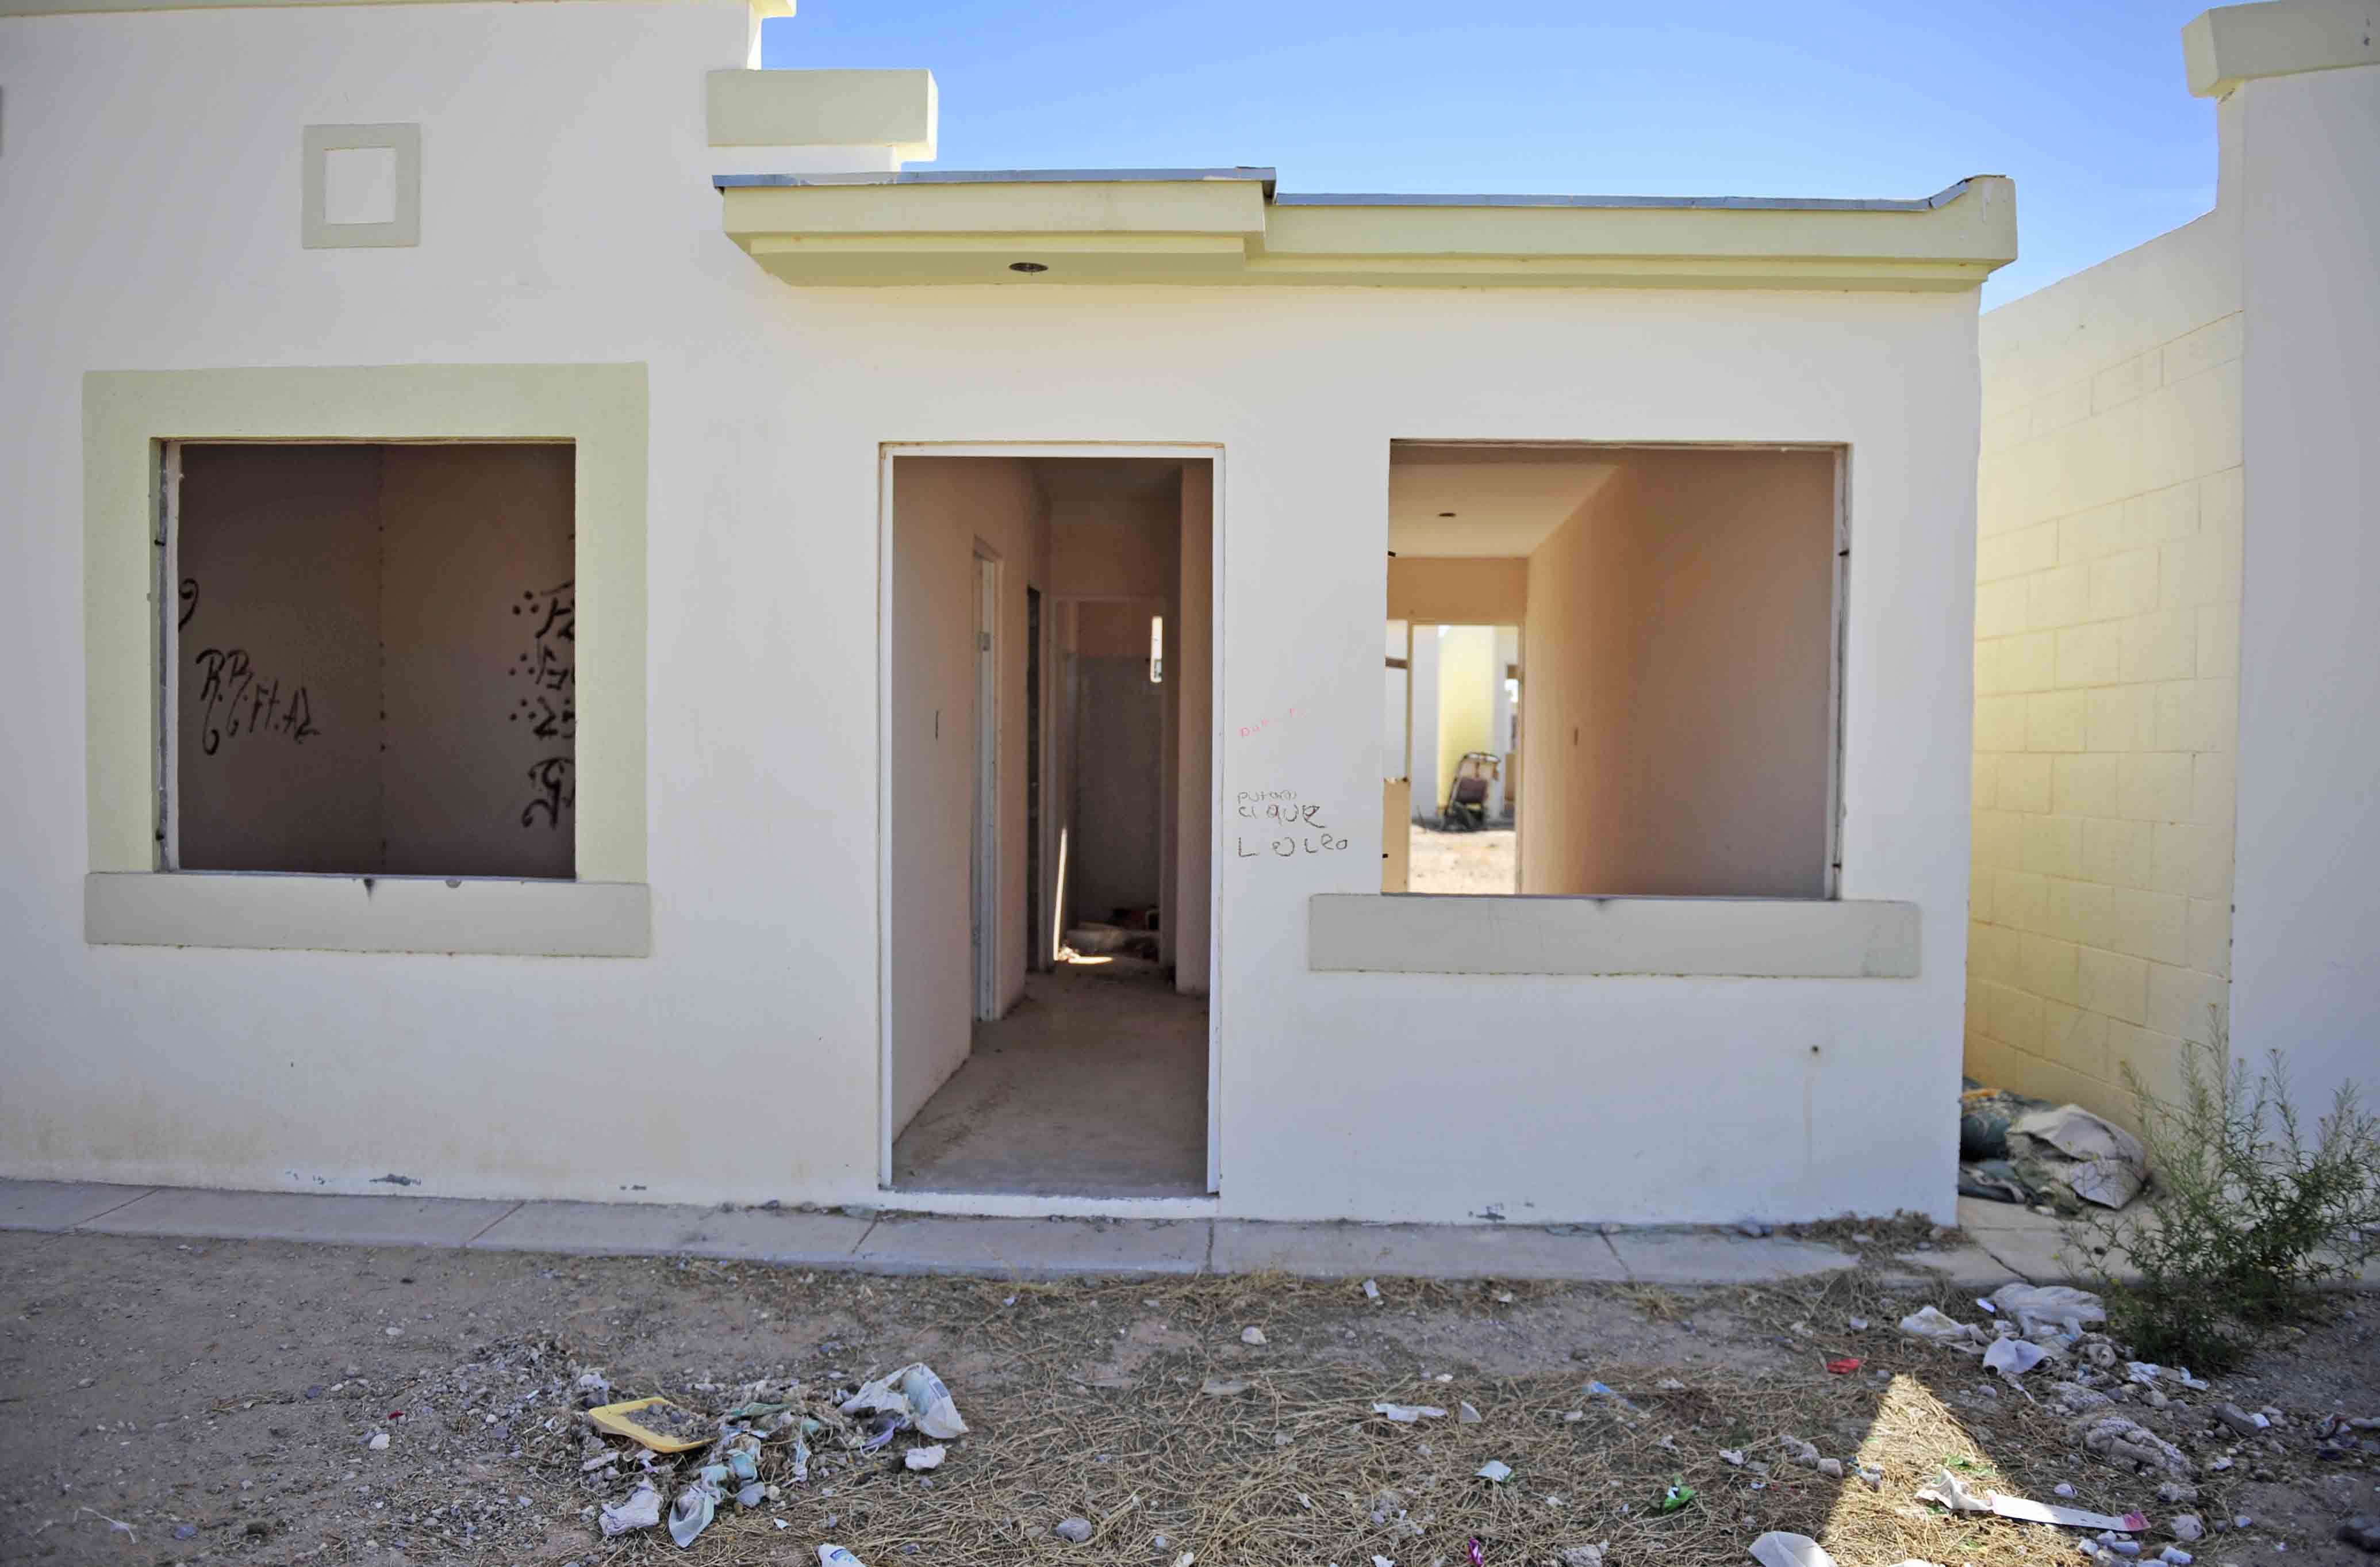 Pondrán a remate 689 casas recuperadas en Ciudad Juárez